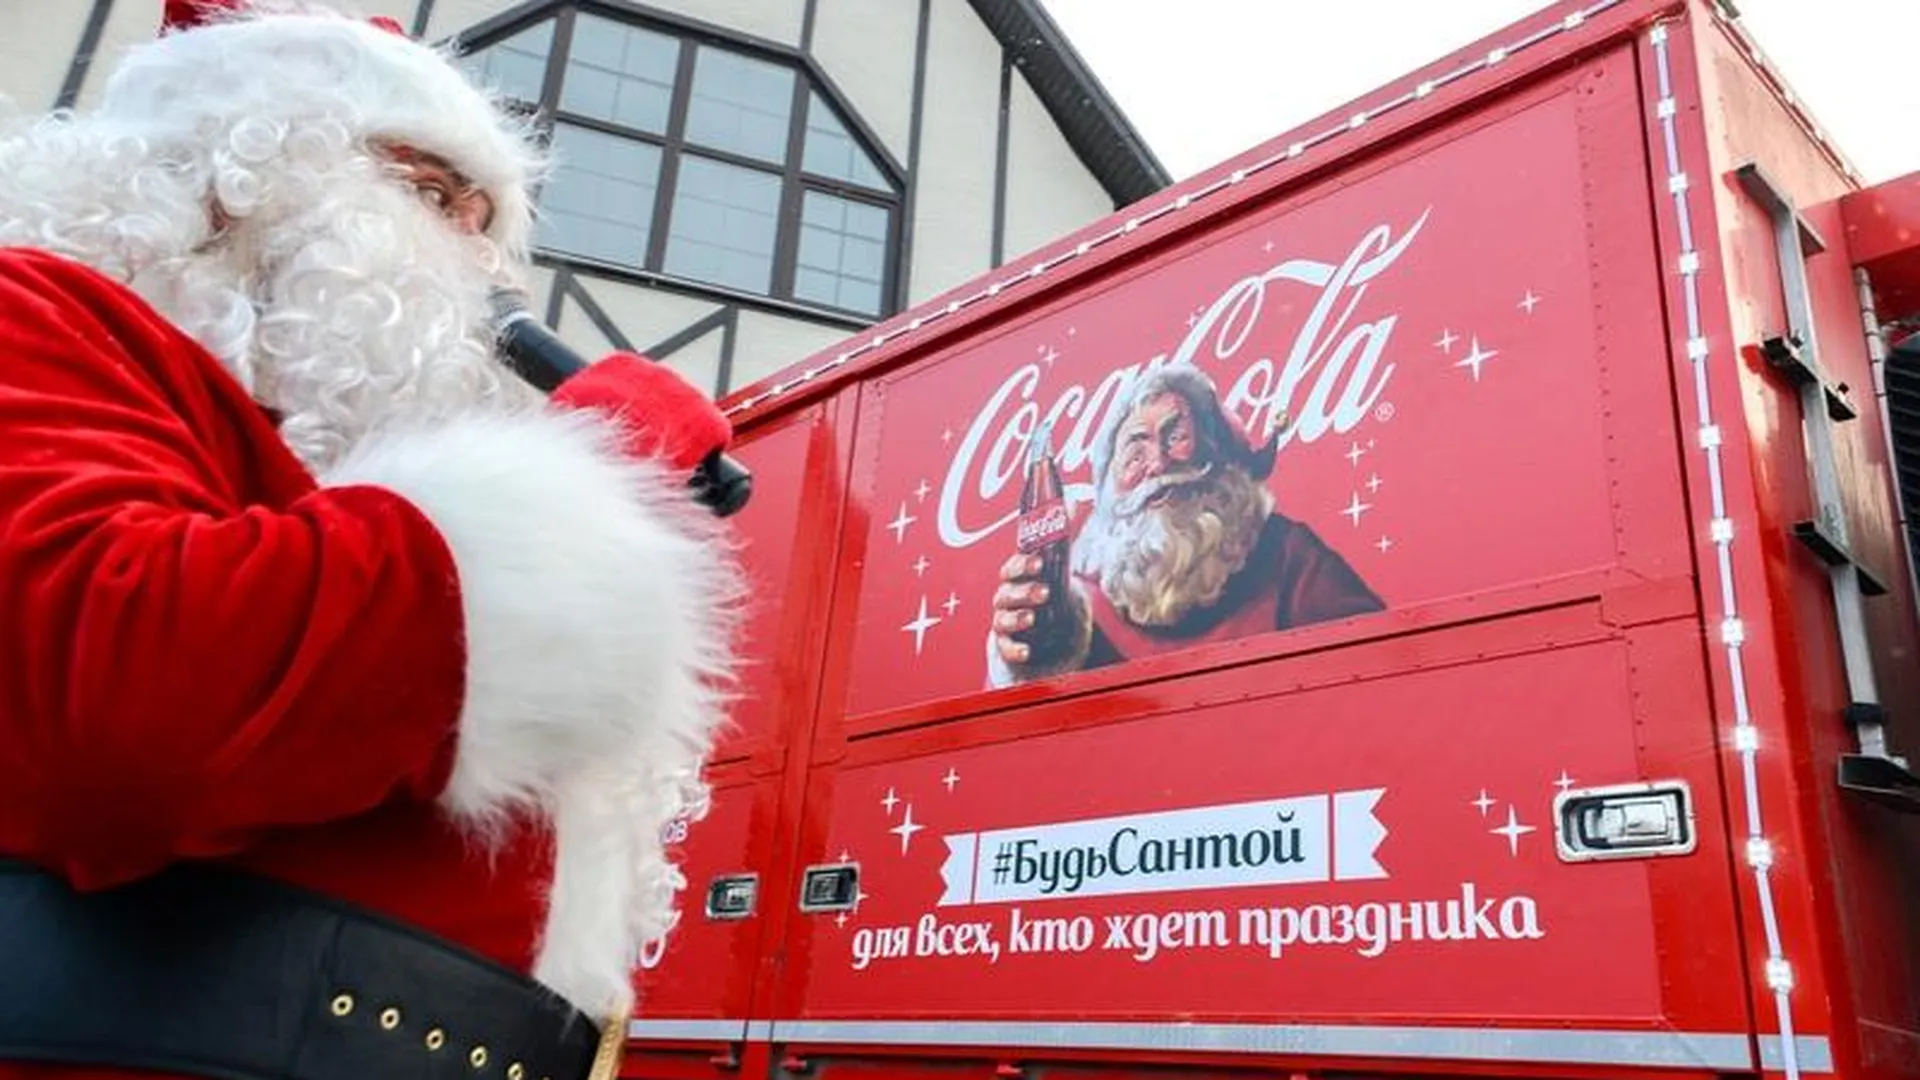 Рождественский караван Cola-Cola впервые посетил Подмосковье 